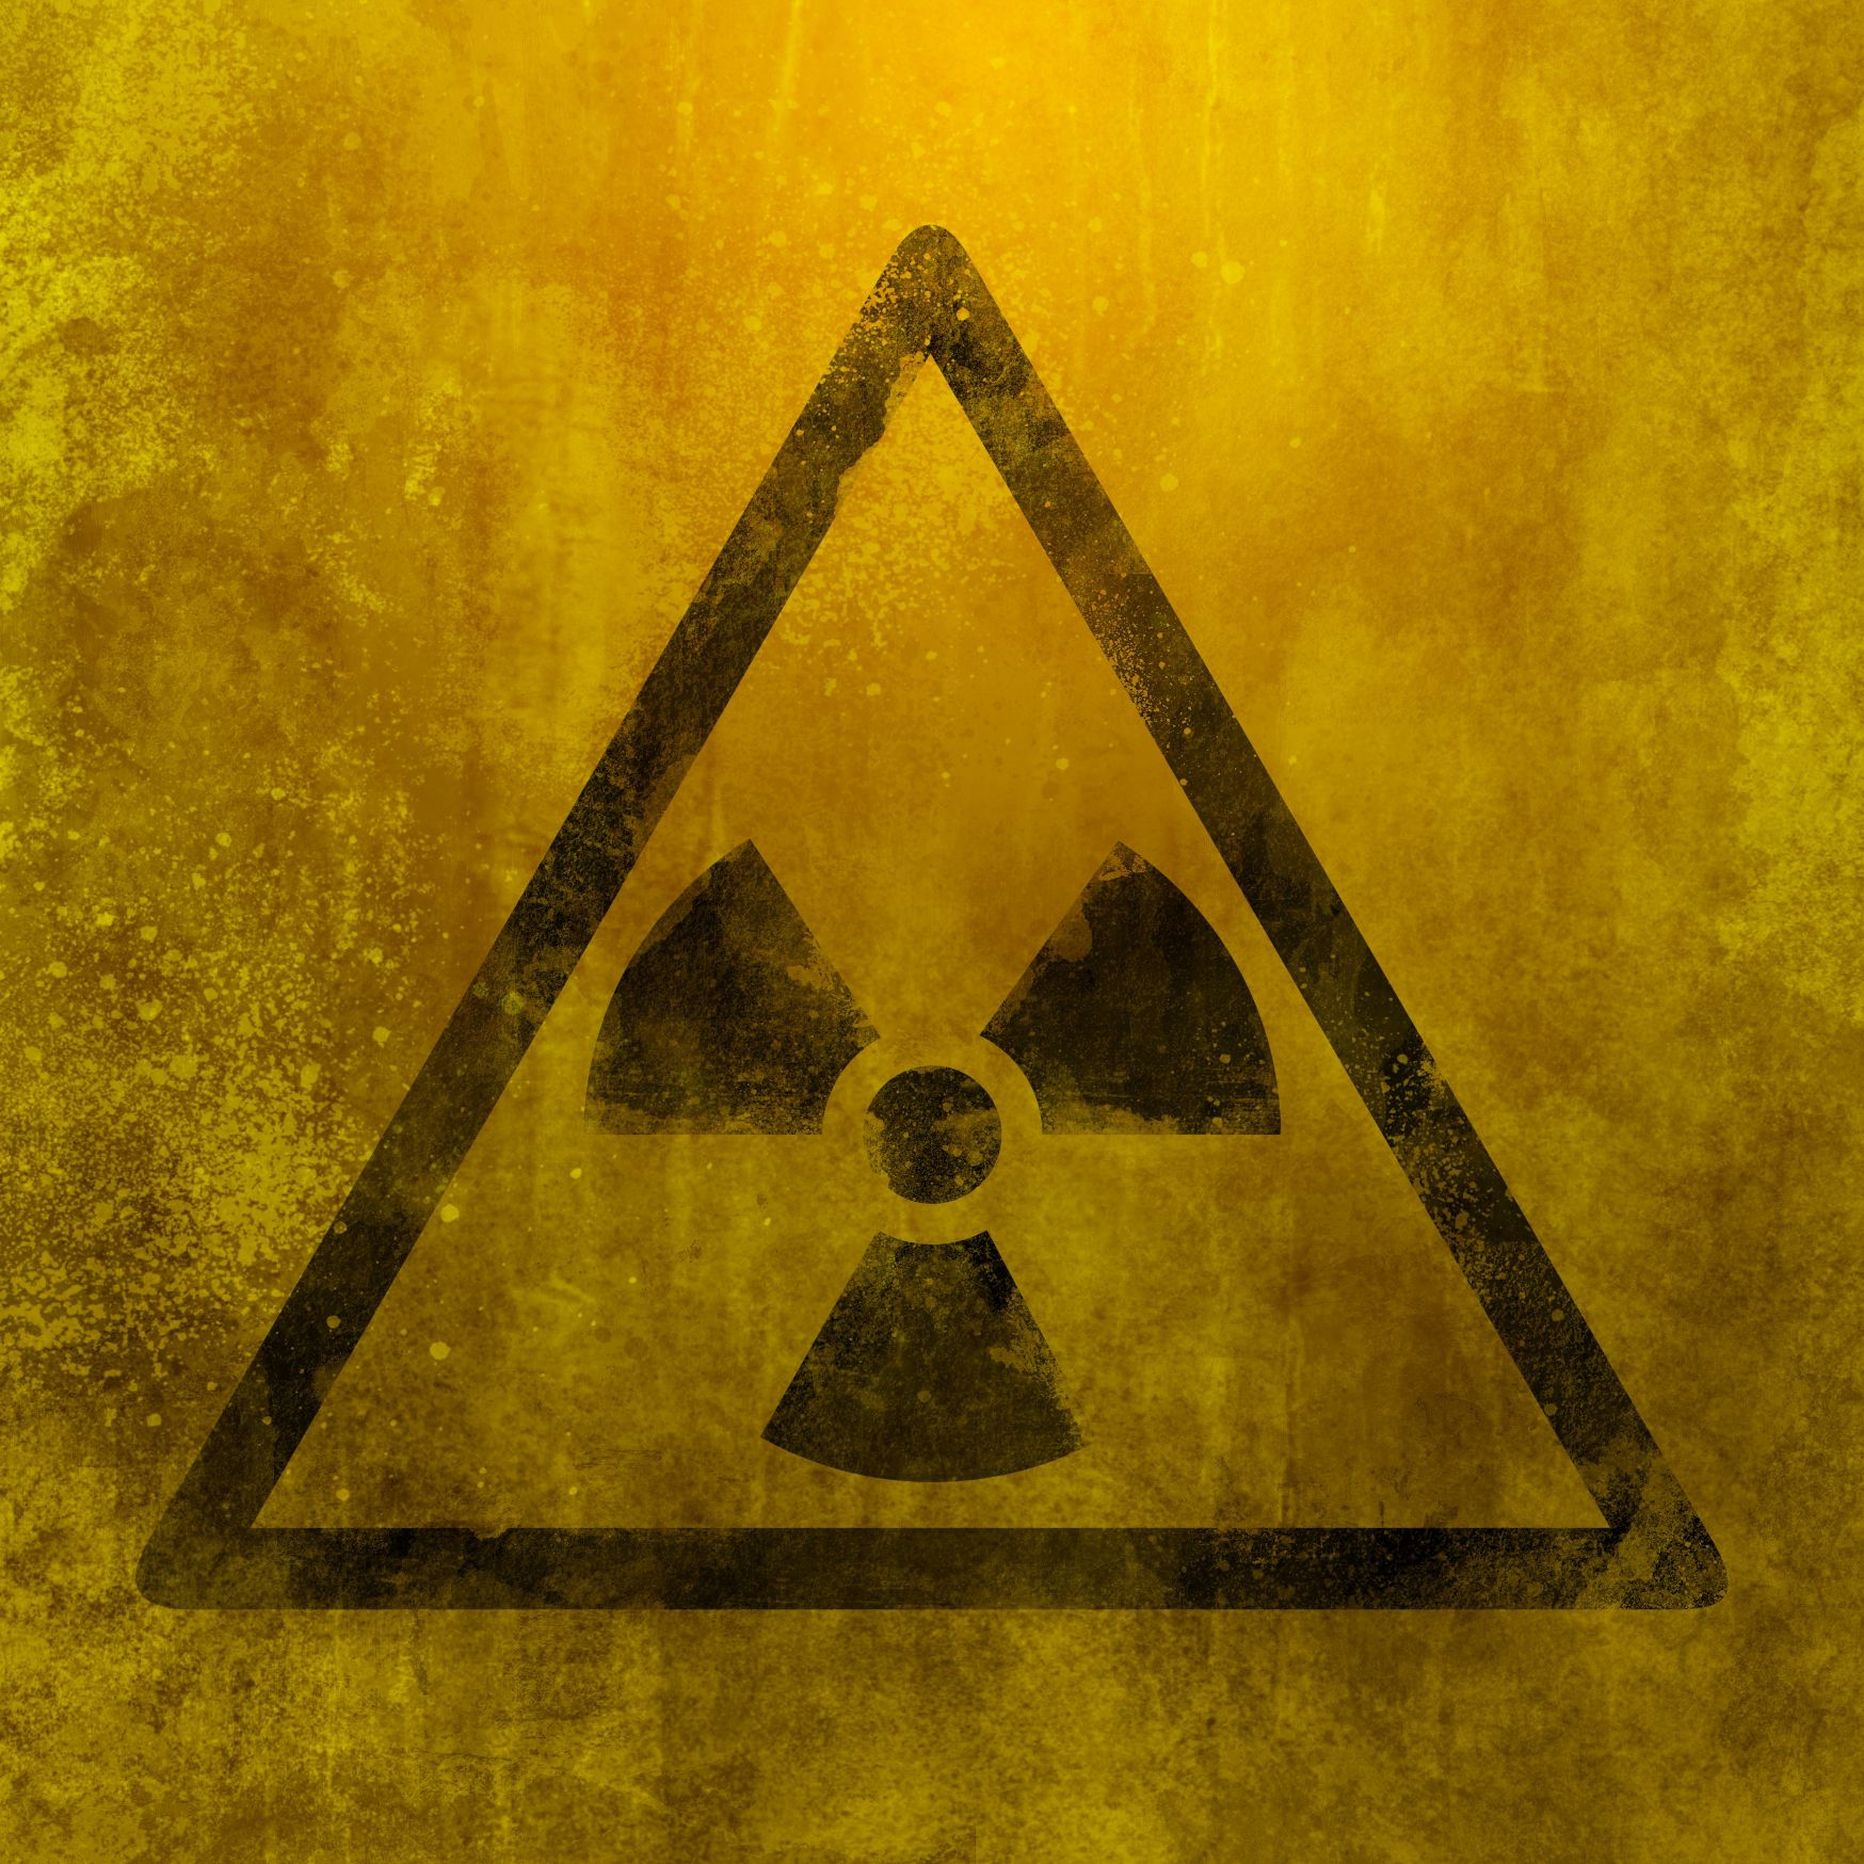 Значок радиации. Иллюстративное фото.